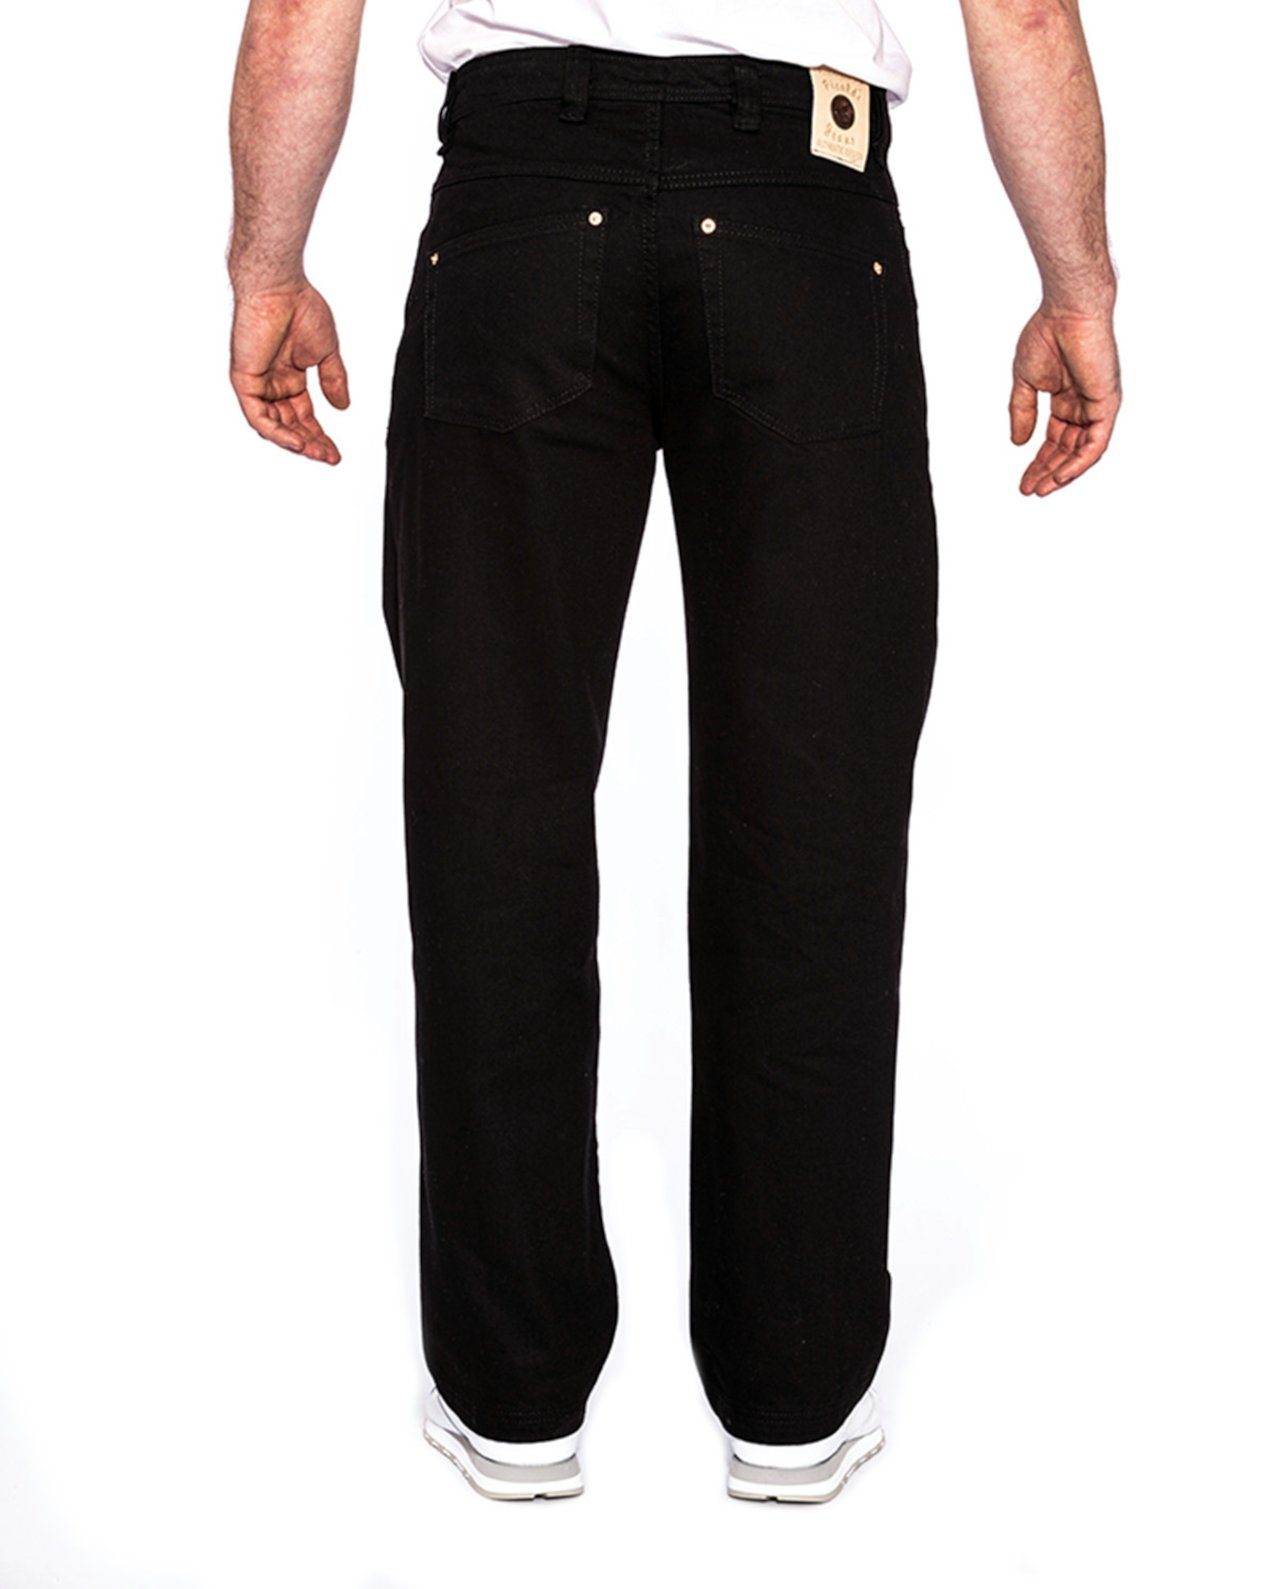 PICALDI Jeans Weite Jeans Zicco Baggy Leg, Black 474 Schnitt Gerader Fit, Straight lässiger